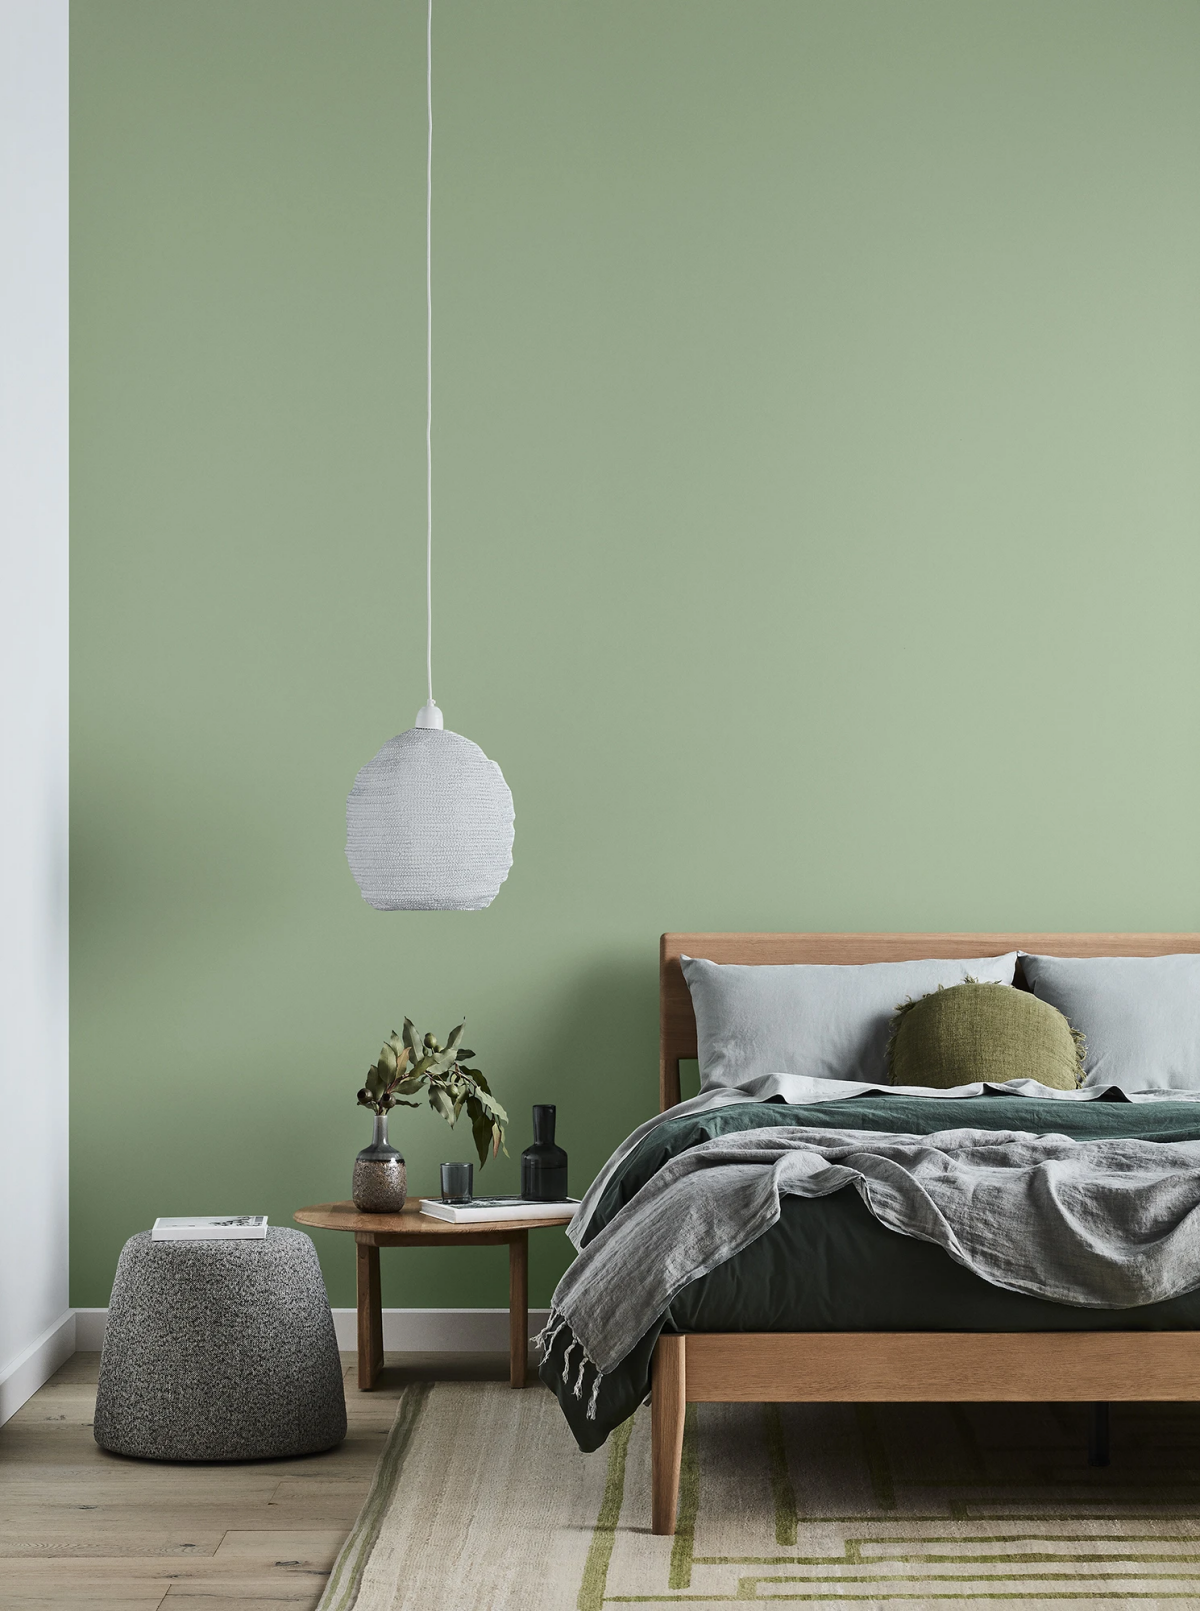 palesage greens bedroom lowres.jpg